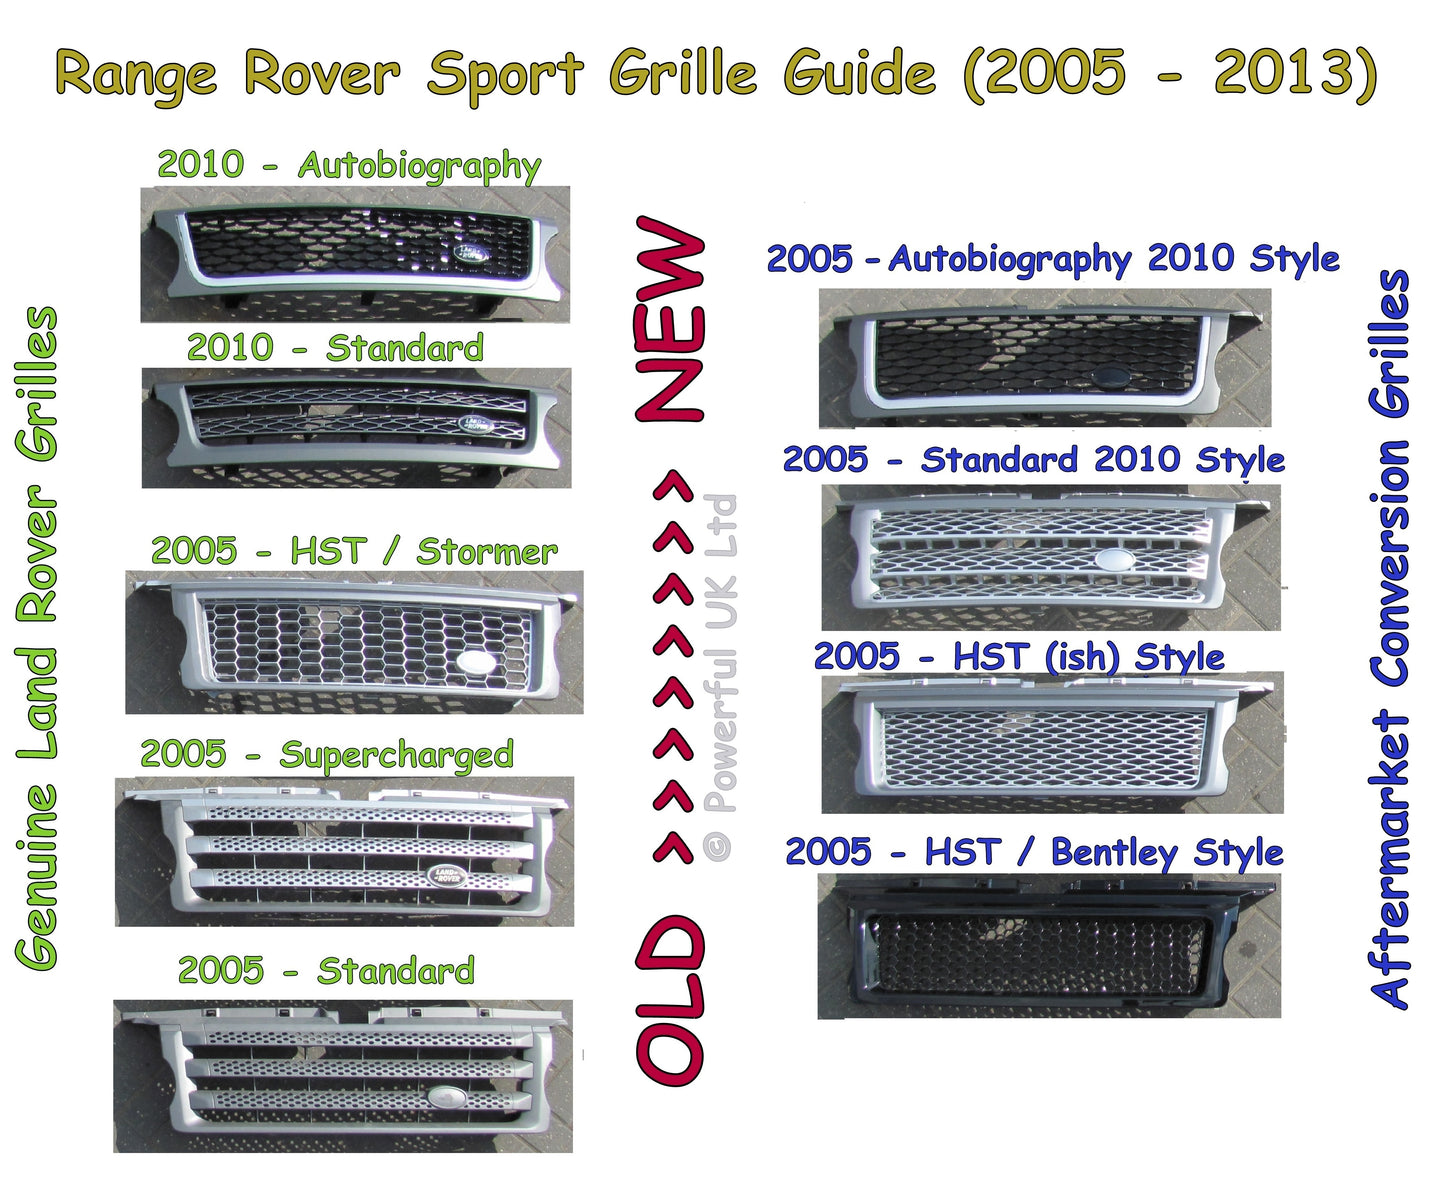 Front Grille - Full Black for Range Rover Sport 05-09